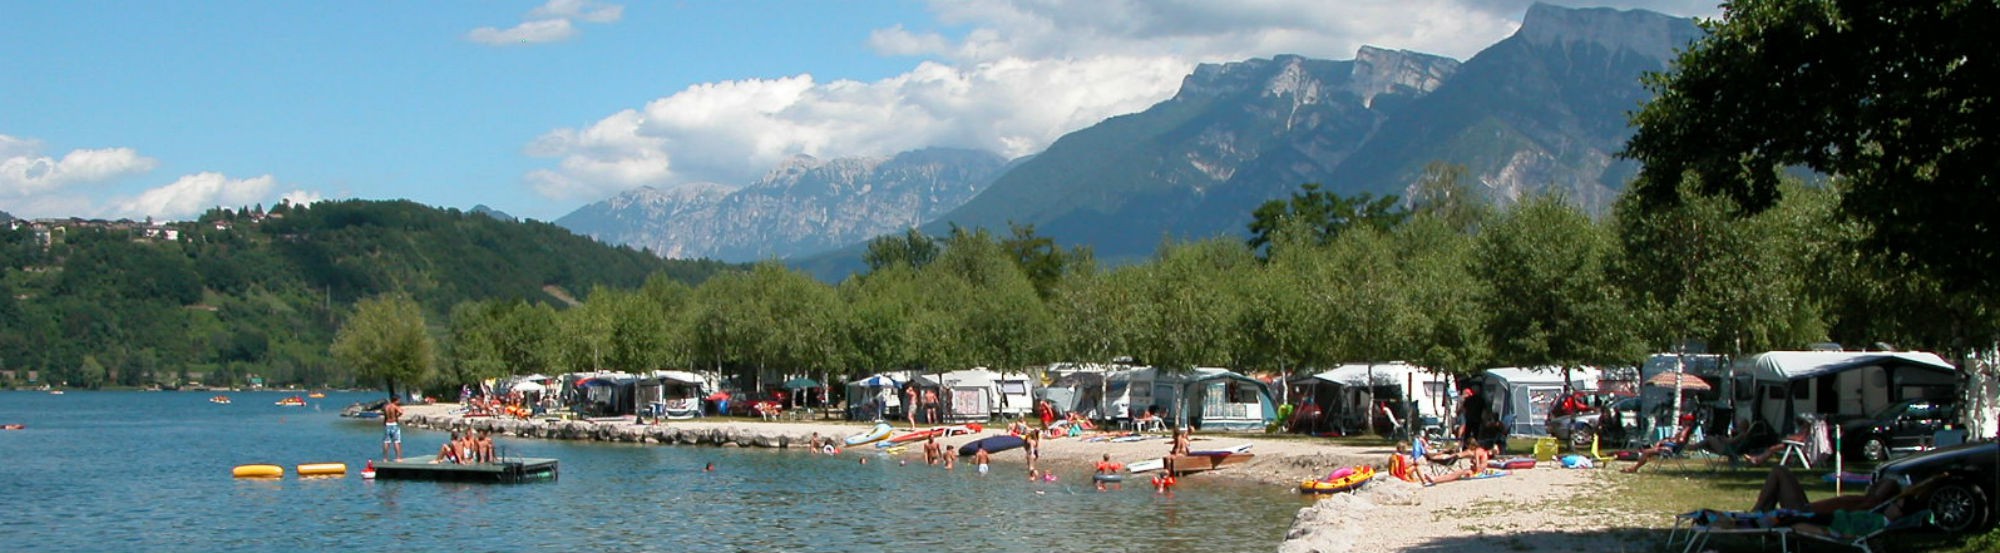 Camping aan het meer van Caldonazzo, Trentino